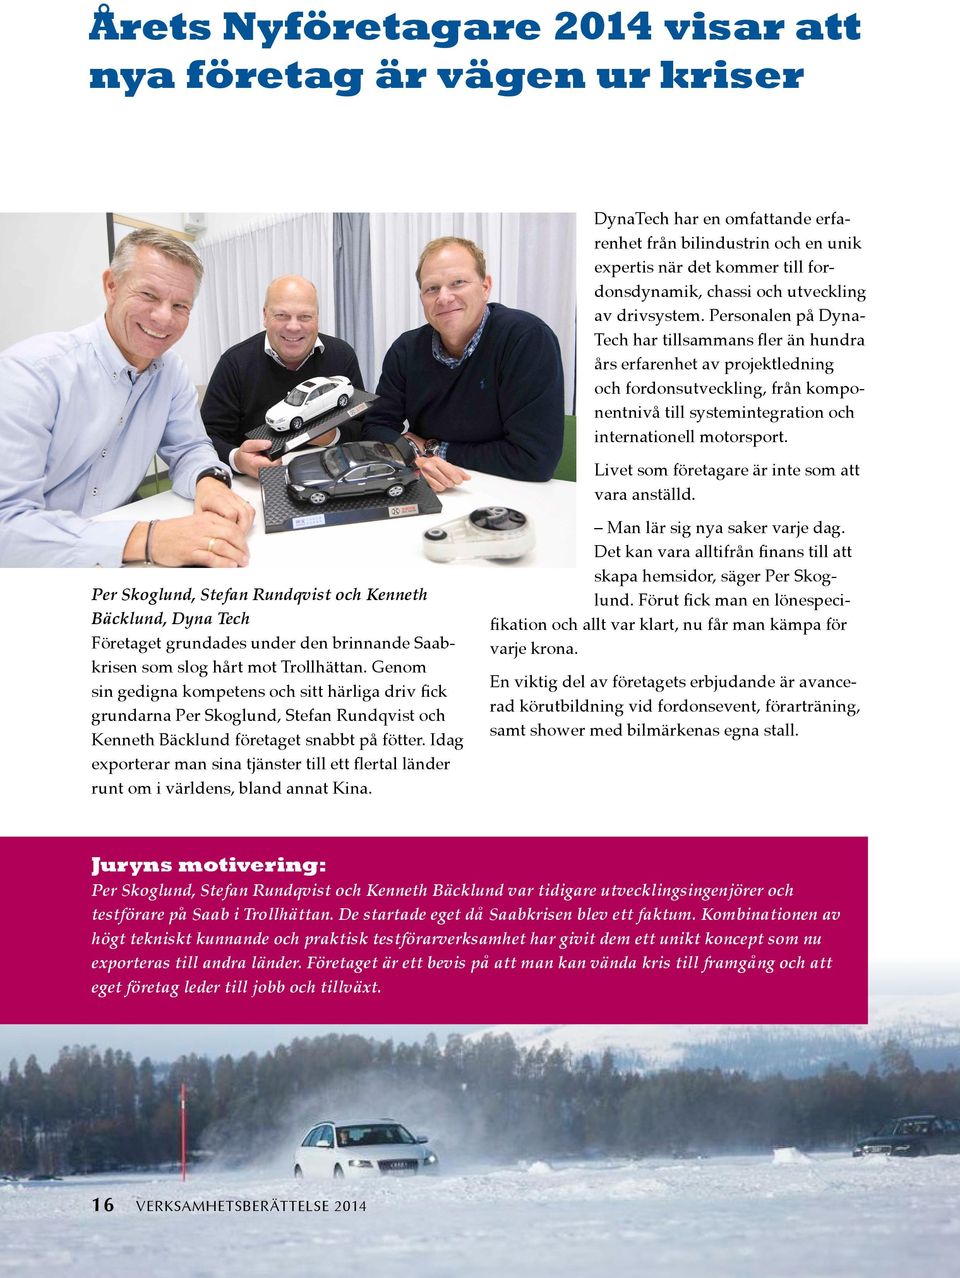 Livet som företagare är inte som att vara anställd. Per Skoglund, Stefan Rundqvist och Kenneth Bäcklund, Dyna Tech Företaget grundades under den brinnande Saabkrisen som slog hårt mot Trollhättan.